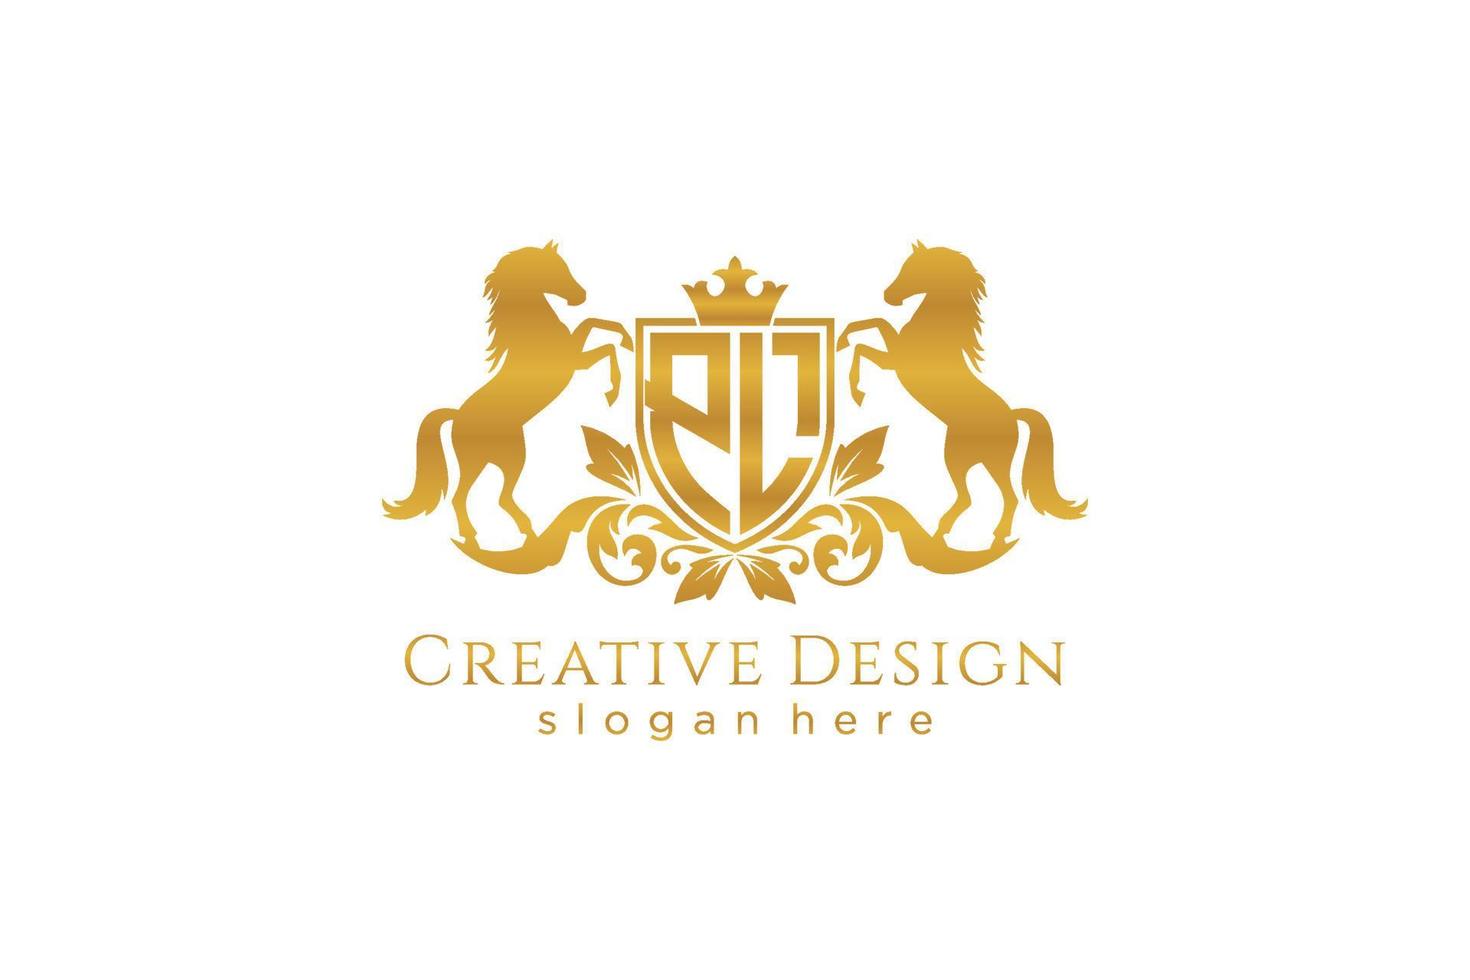 cresta dorada retro pl inicial con escudo y dos caballos, plantilla de insignia con pergaminos y corona real - perfecto para proyectos de marca de lujo vector